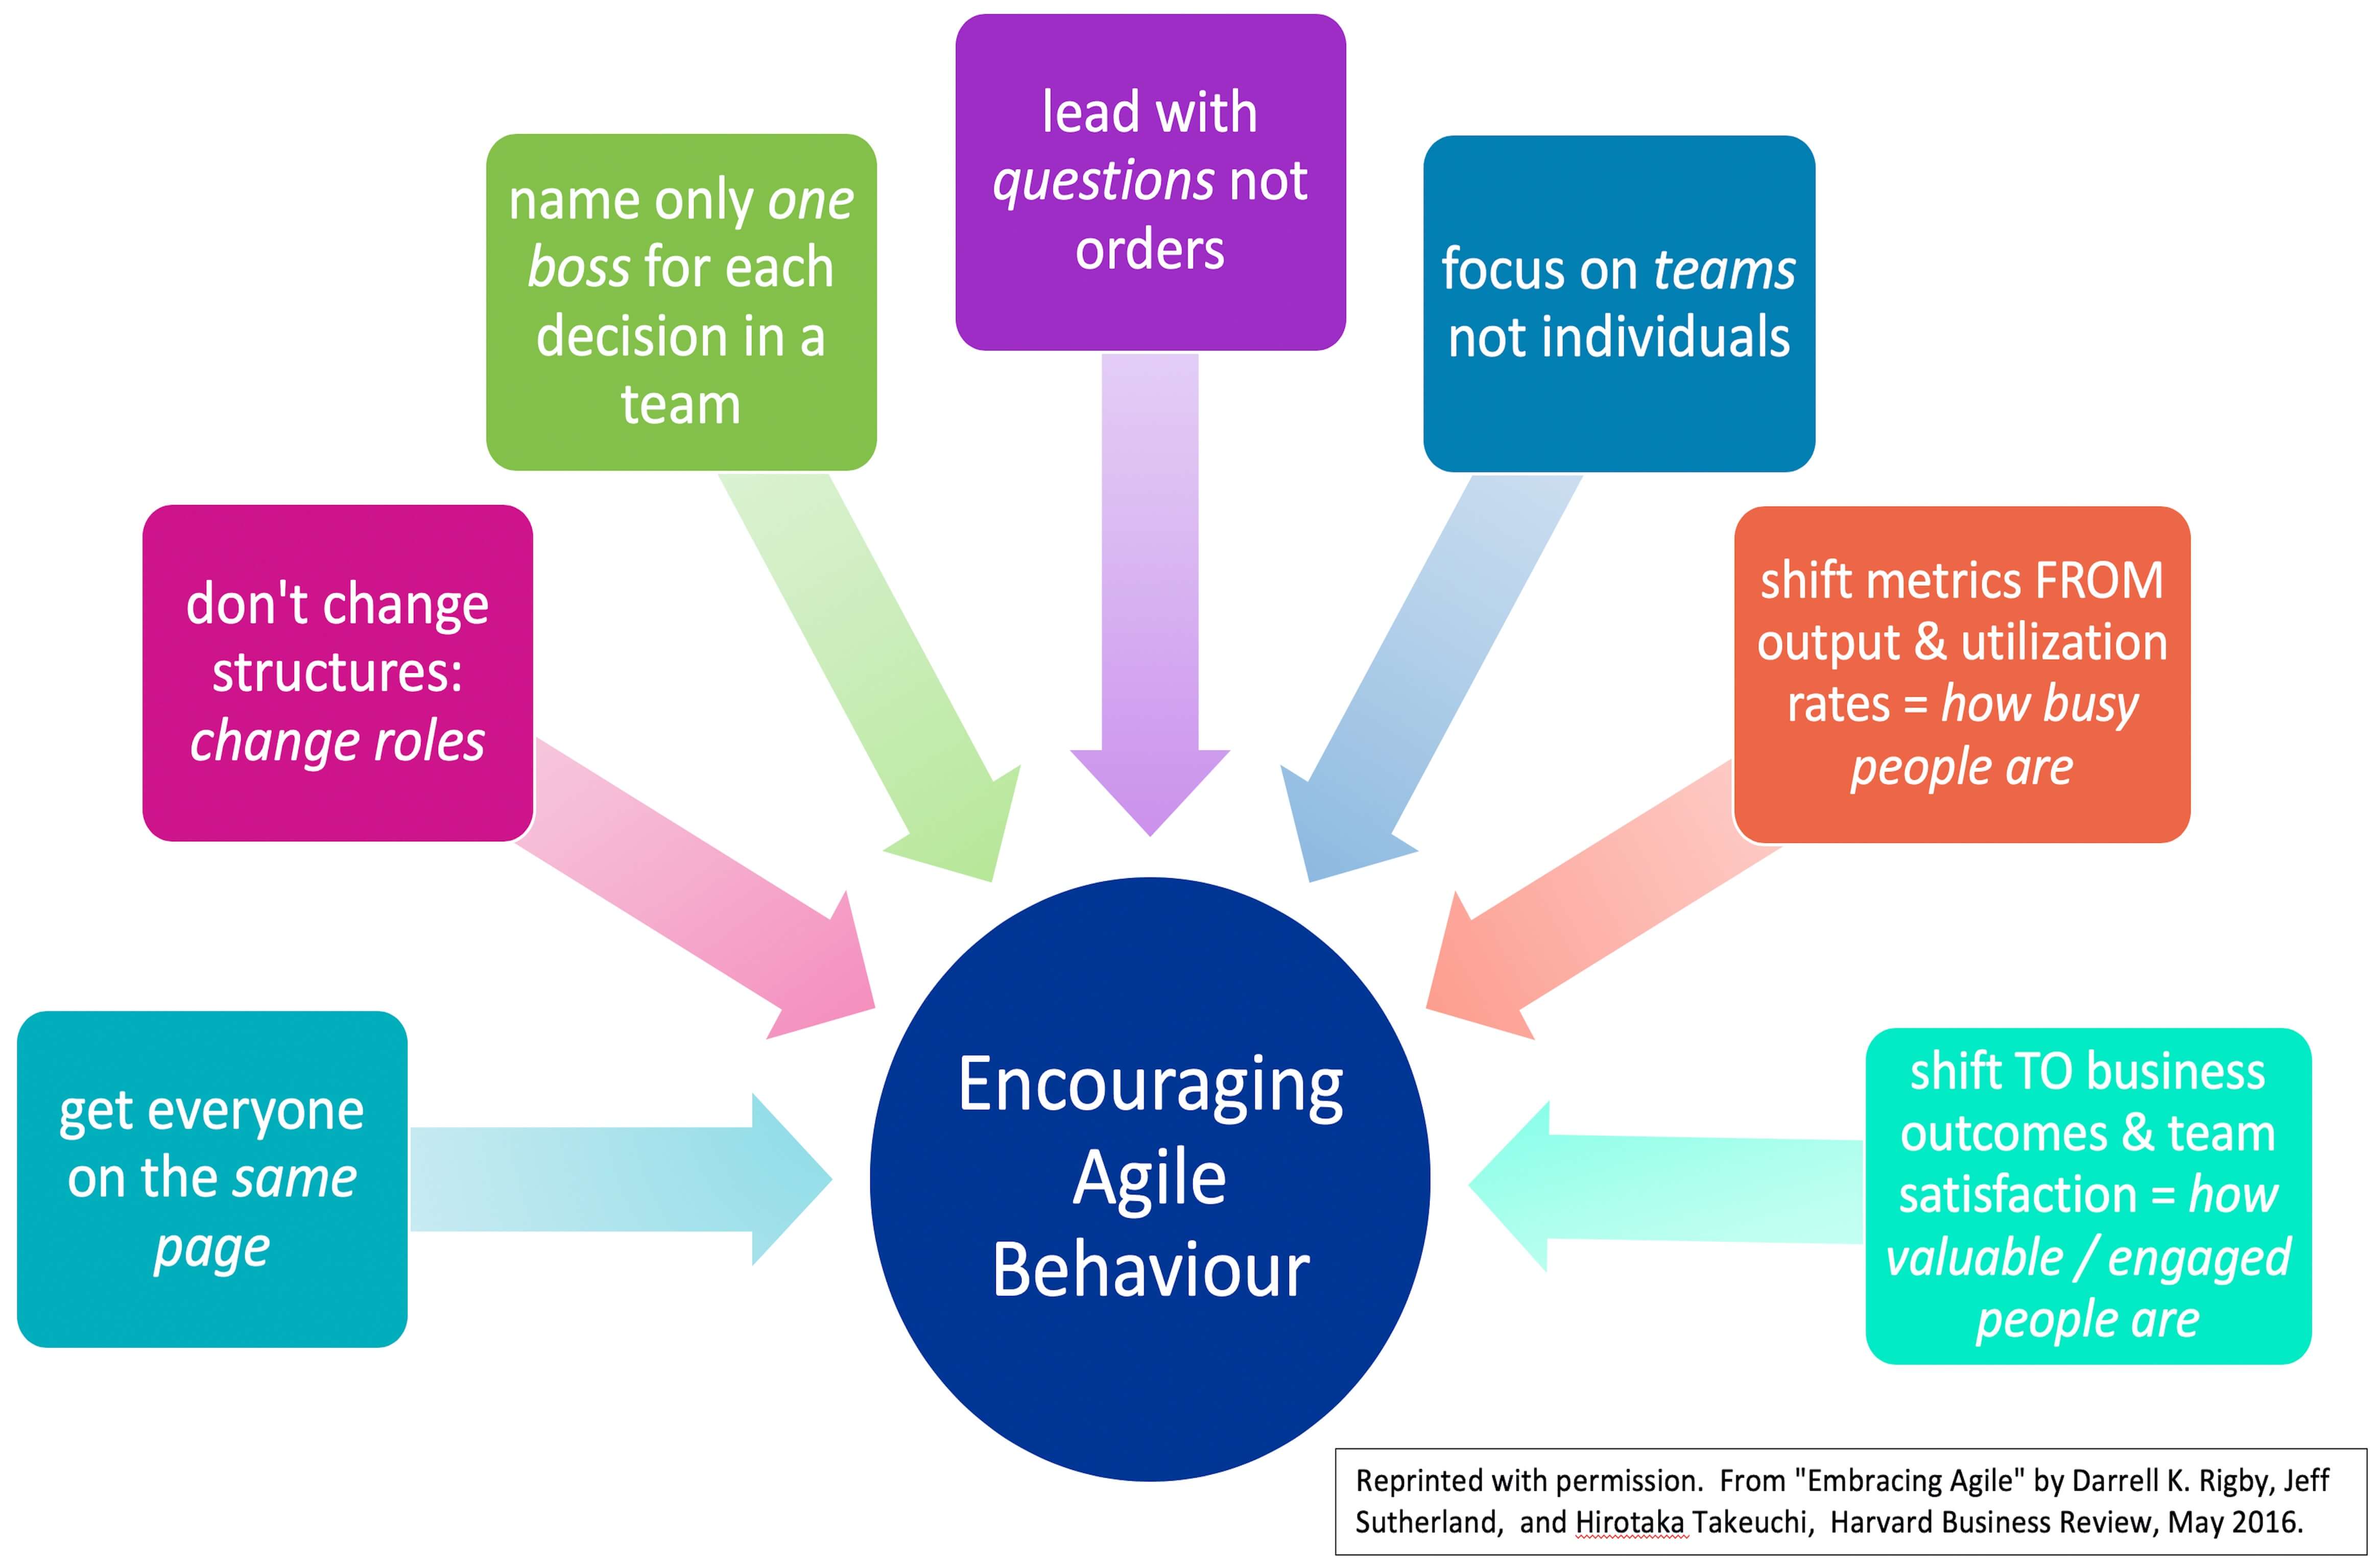 benefits of agile